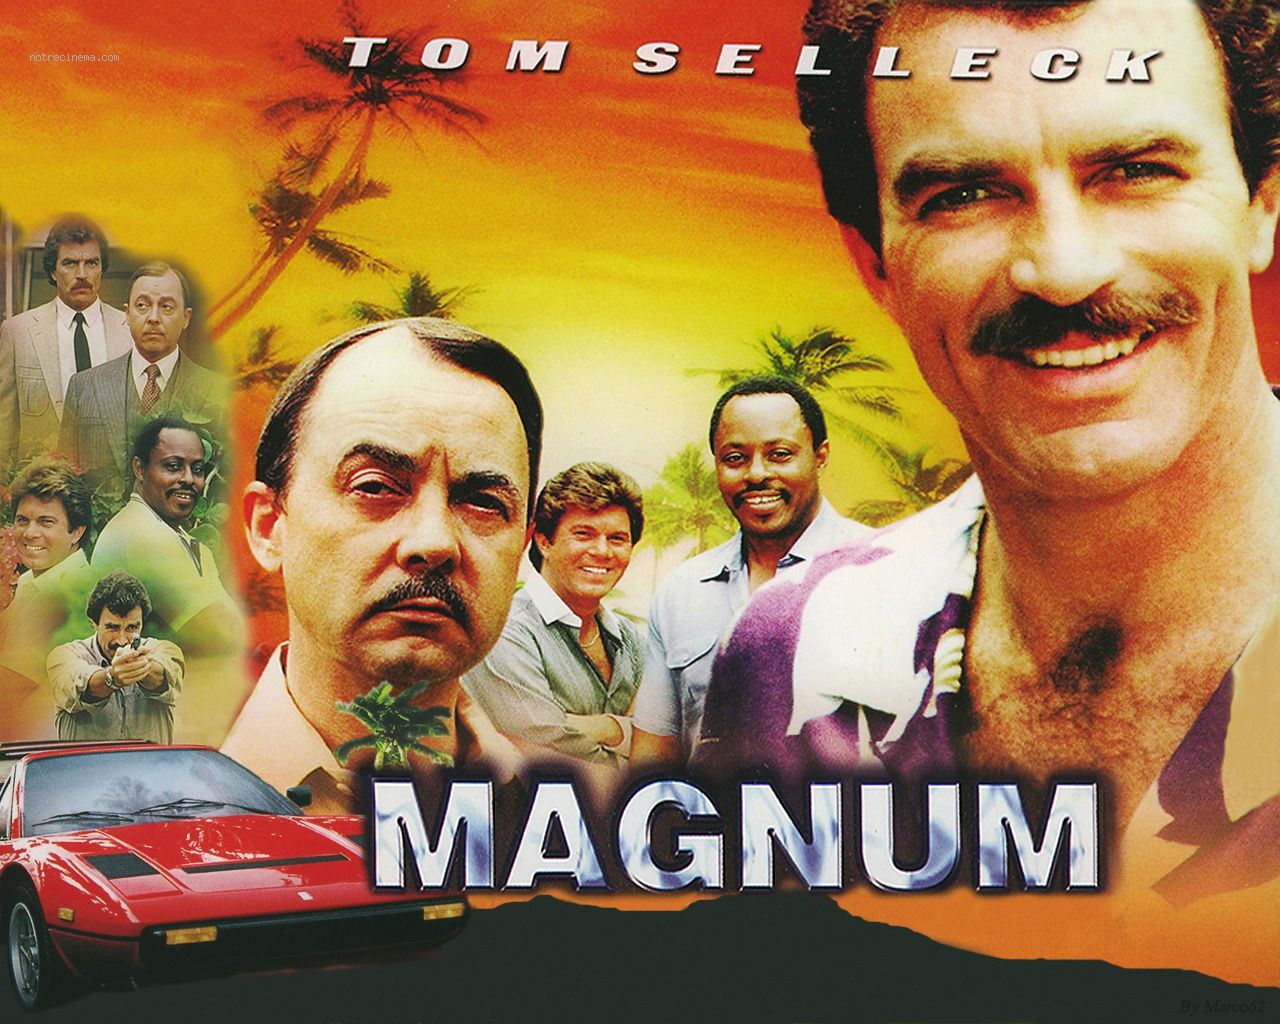 Magnum P.I. Wallpaper. Magnum P.I. Wallpaper, Magnum Force Wallpaper and Magnum Wallpaper